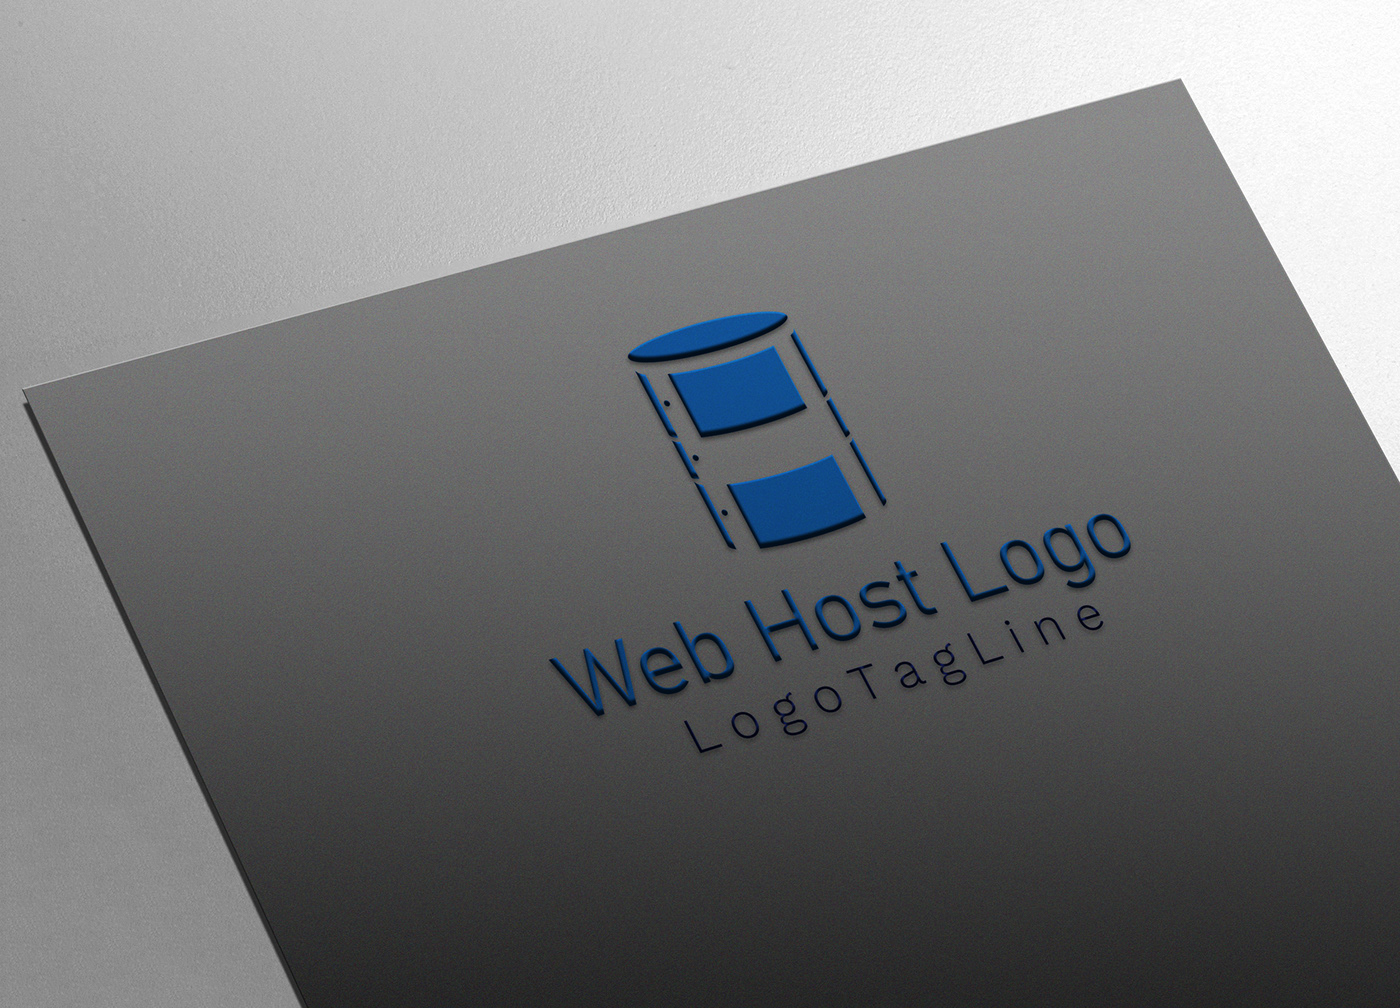 blue color hosting logo
h letter web hosting logo